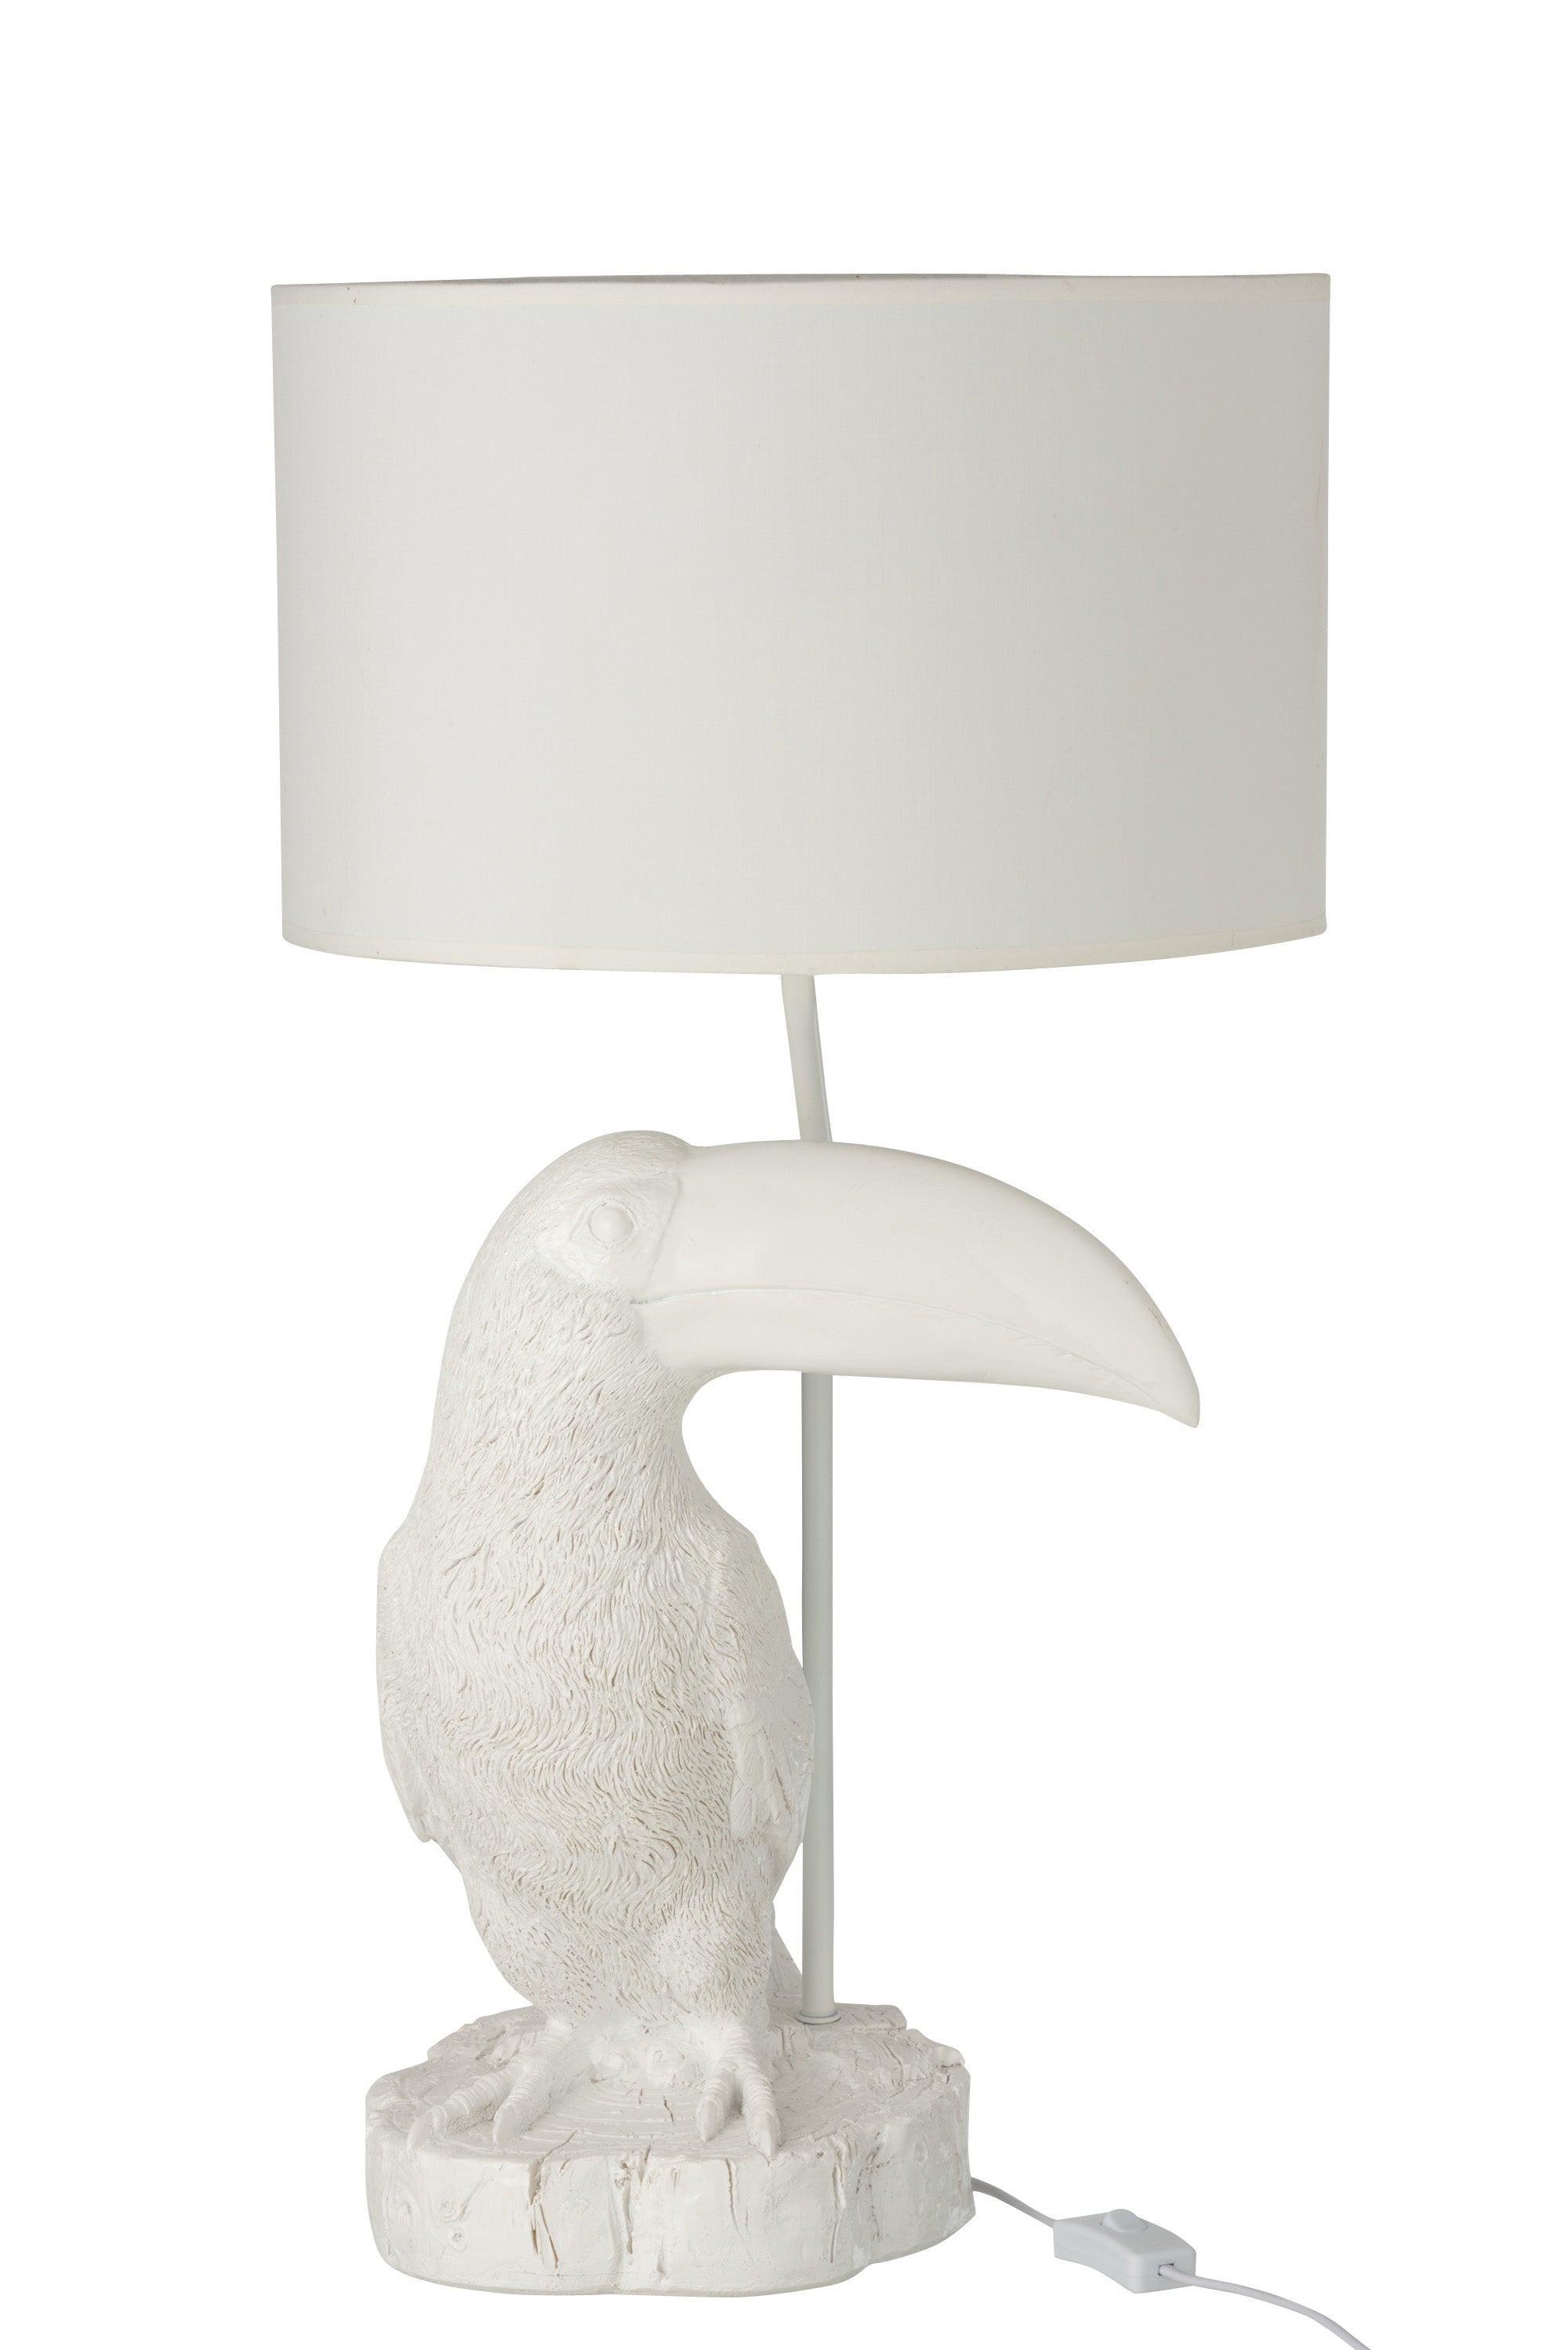 Imposante Tischlampe; ein weißer Tukan sitzt auf einer weißen Holzscheibe als Sockel, an der Rückseite des Sockels stellt ein dünnes weißes Metallrohr die Verbindung zum weißen, runden Lampenschirm dar, der über den Tukan ragt.